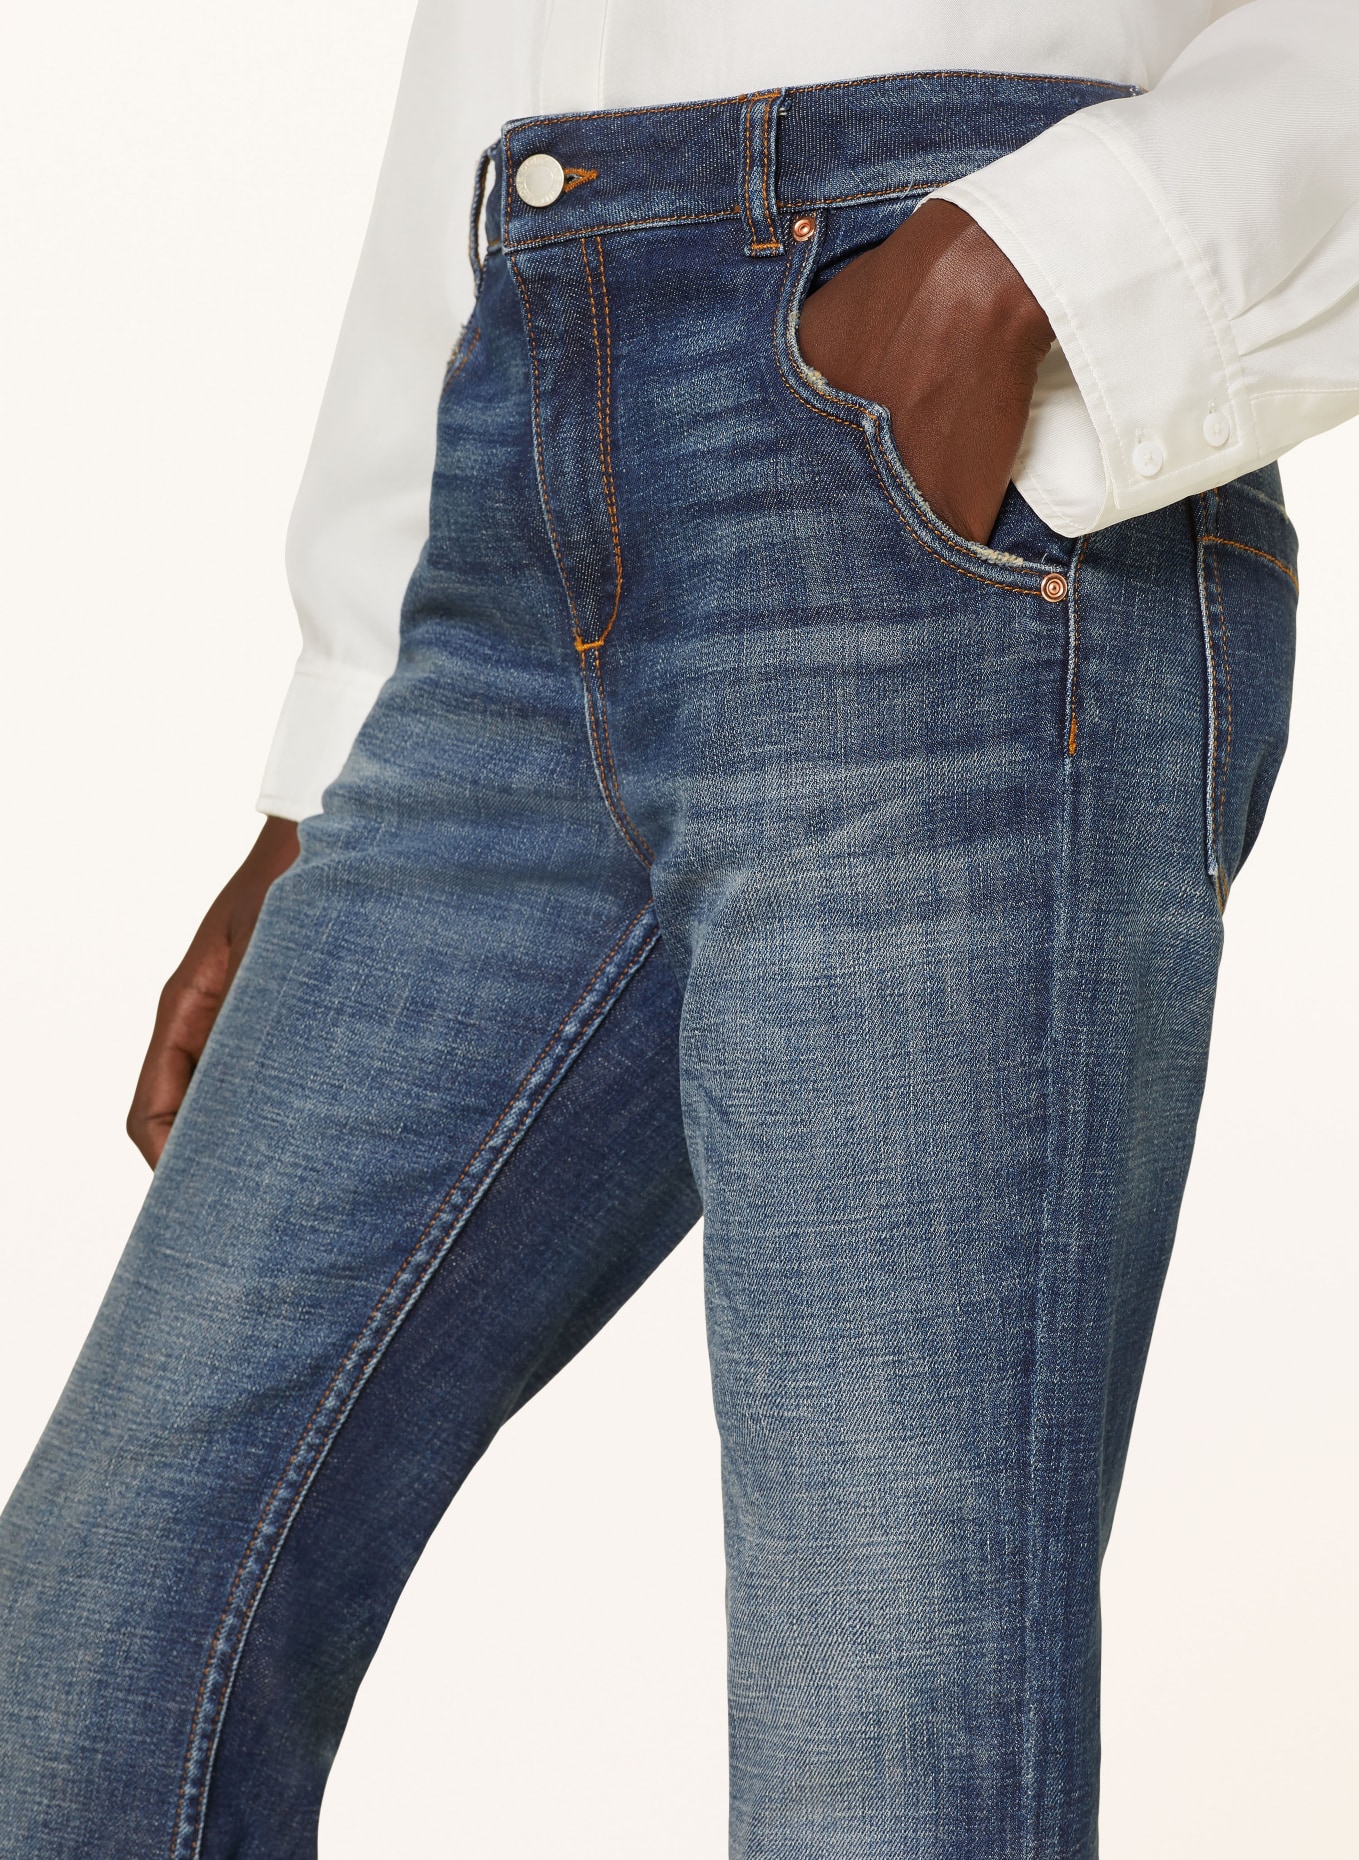 DOROTHEE SCHUMACHER Flared jeans DENIM LOVE PANTS, Color: 872 Denim (Image 5)